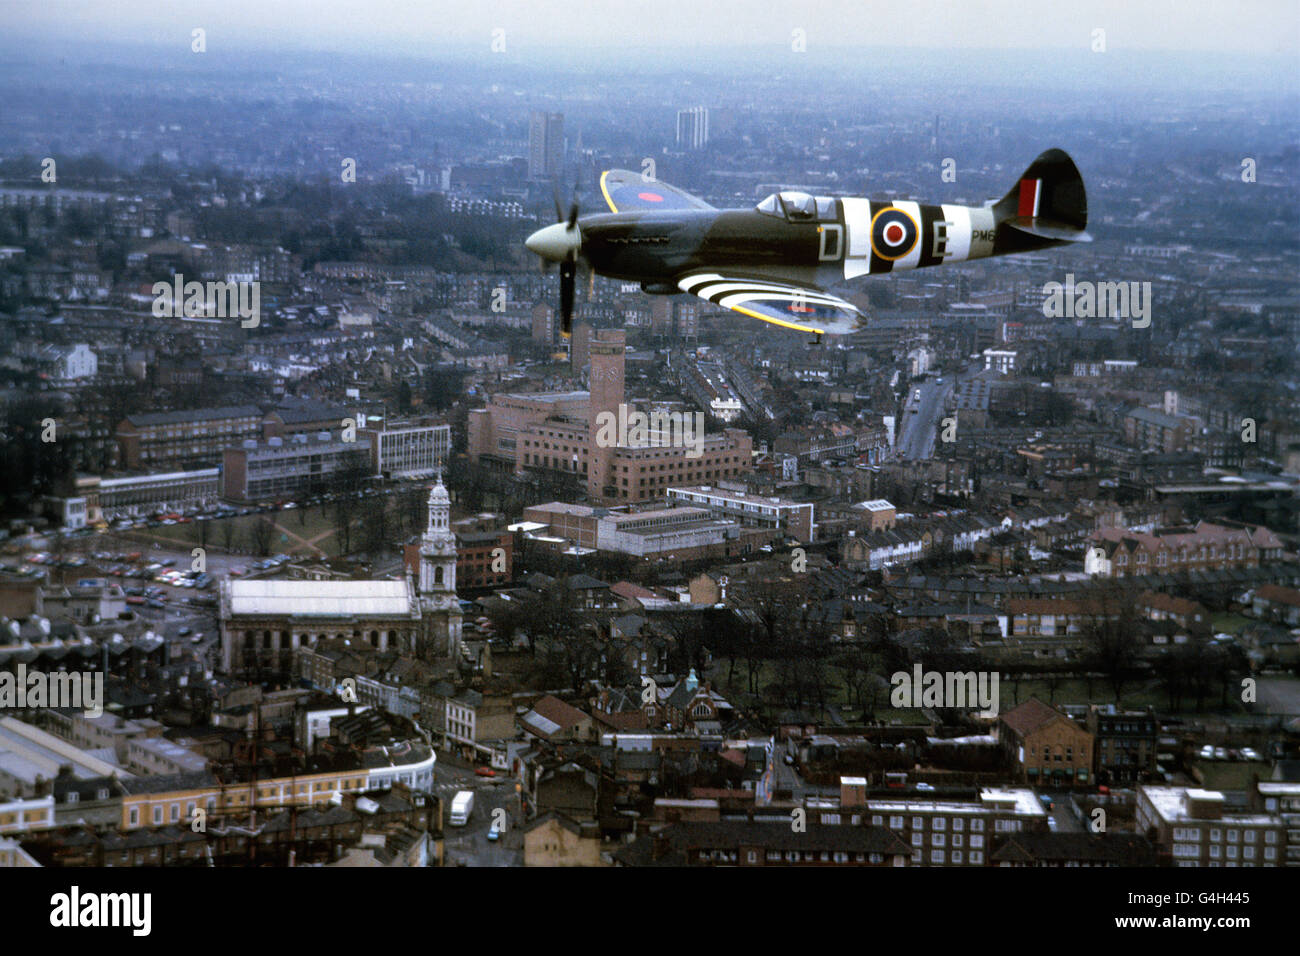 Aviazione - Supermarine Spitfire - cinquantesimo anniversario del volo - Londra Foto Stock